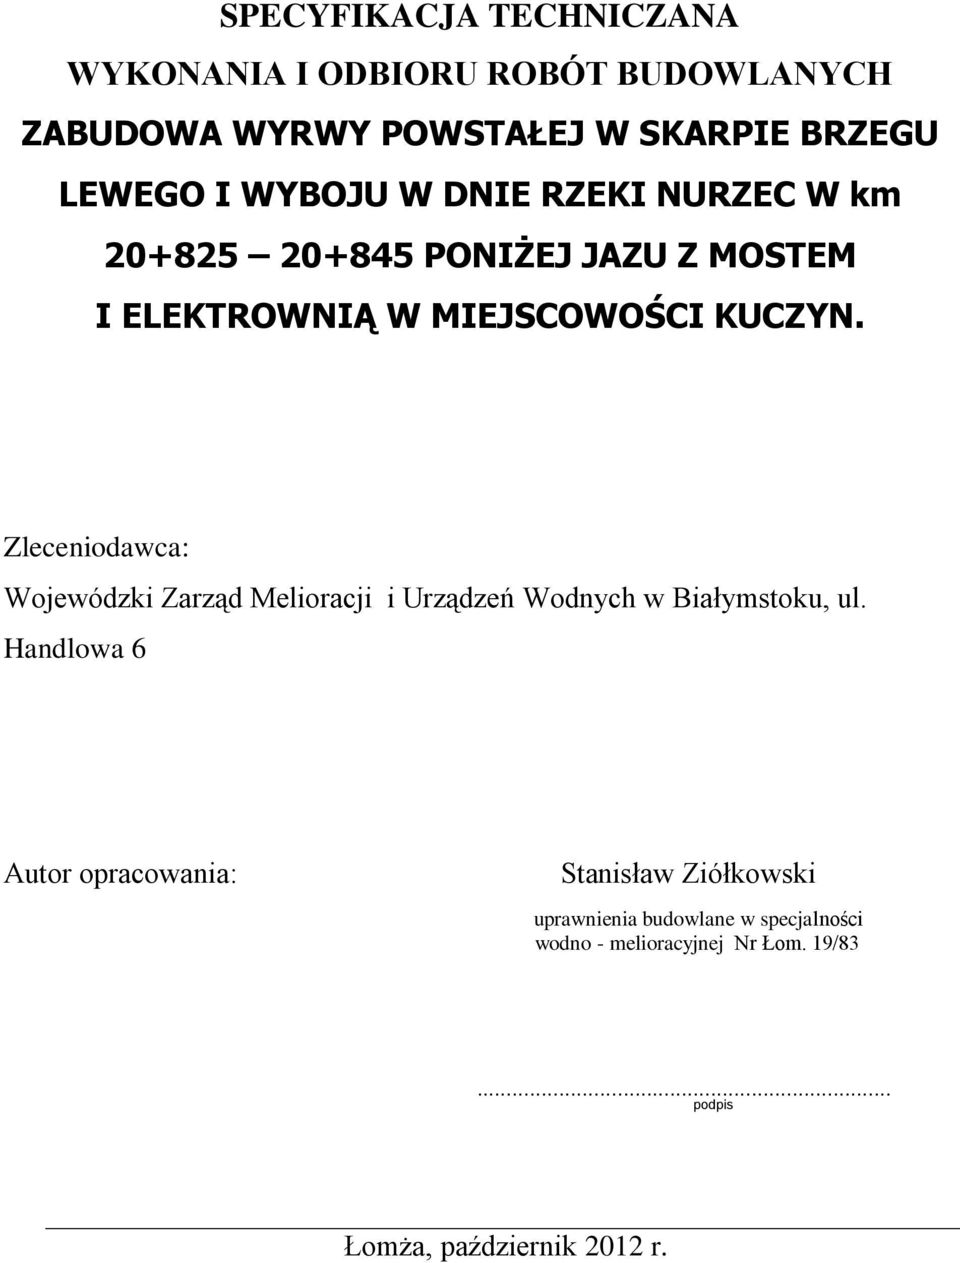 Zleceniodawca: Wojewódzki Zarząd Melioracji i Urządzeń Wodnych w Białymstoku, ul.